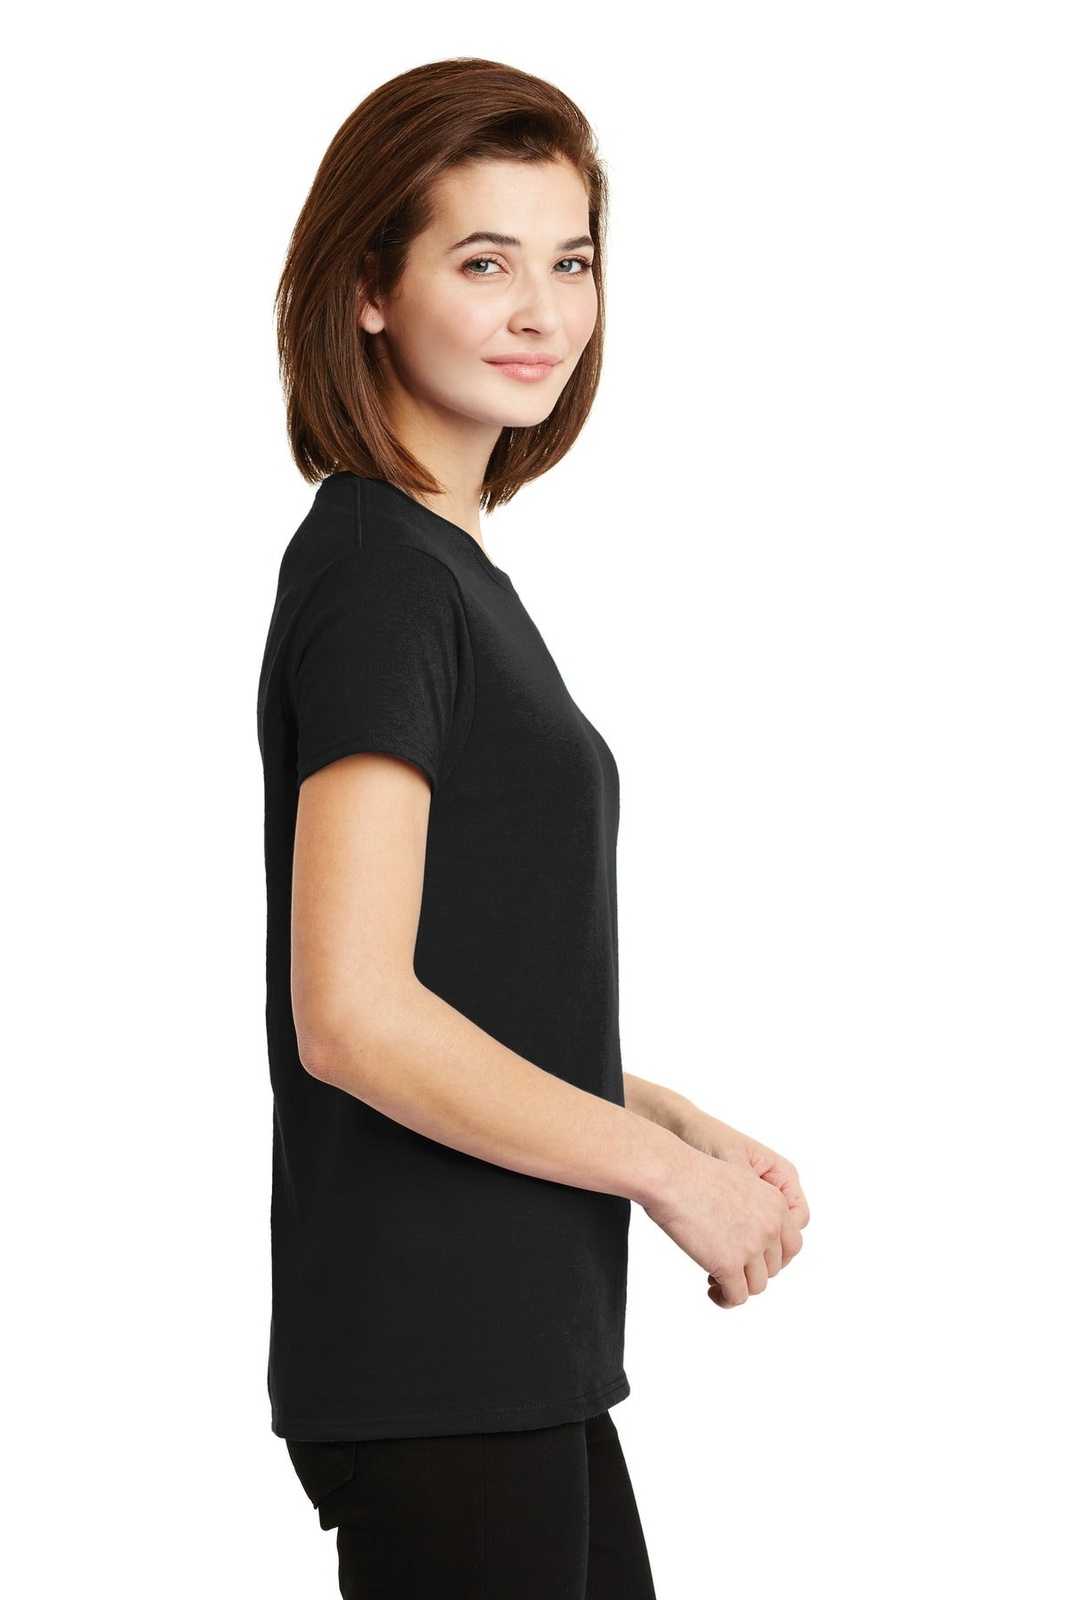 Gildan 2000L Ladies Ultra Cotton 100% Cotton T-Shirt - Black - HIT a Double